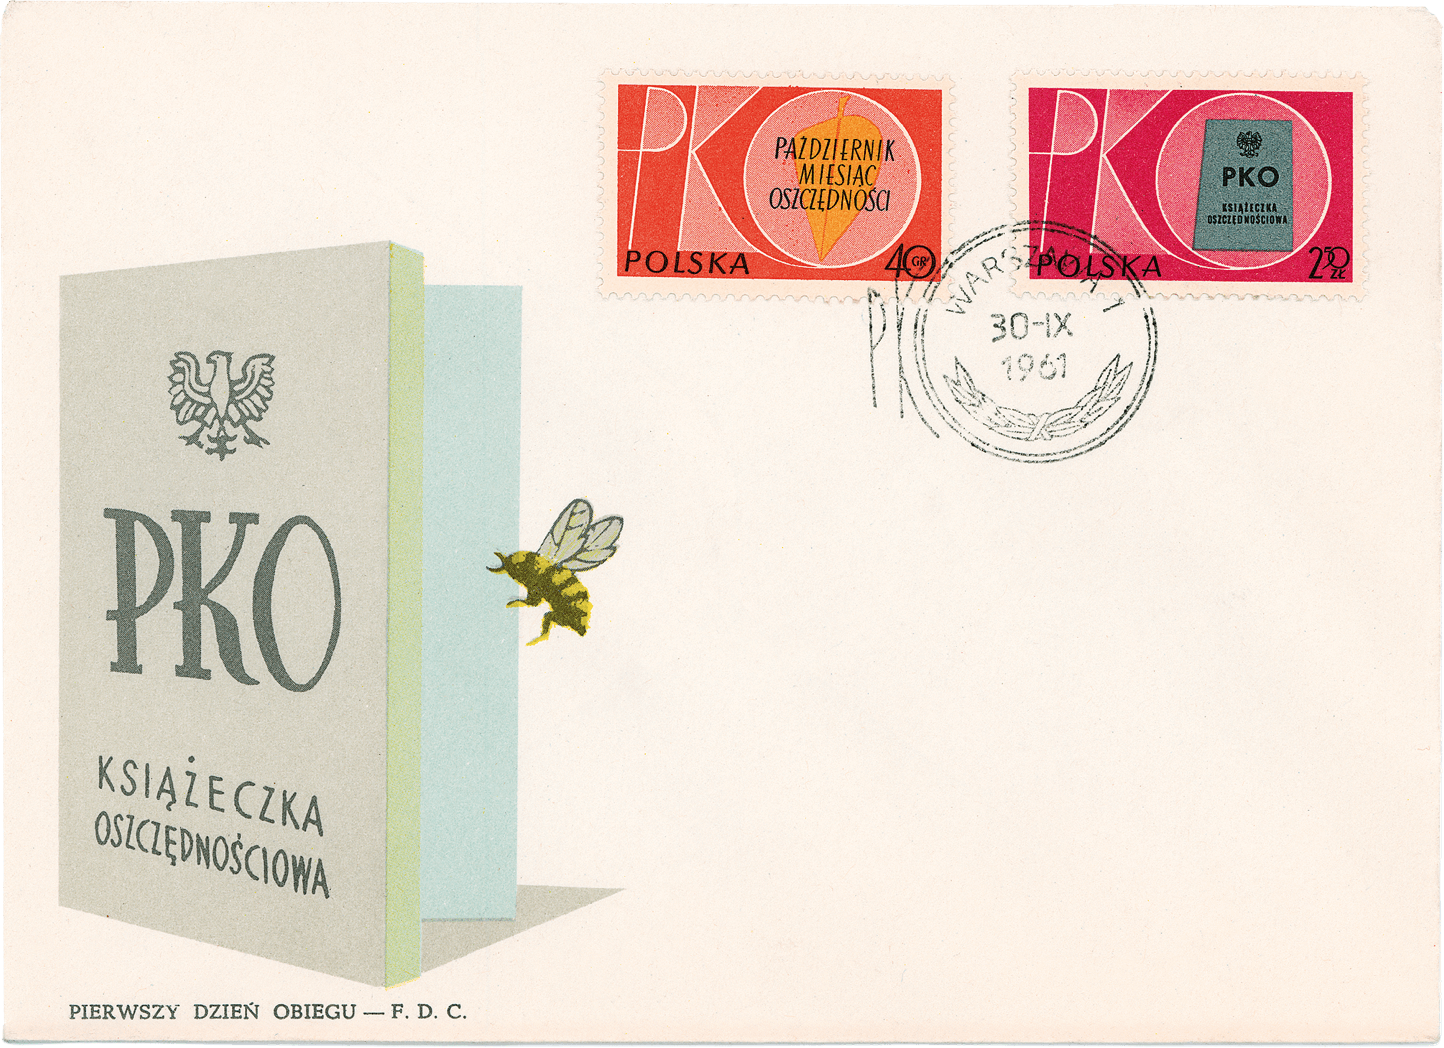 Znaczki pocztowe z 1961 roku - październik miesiącem oszczędności